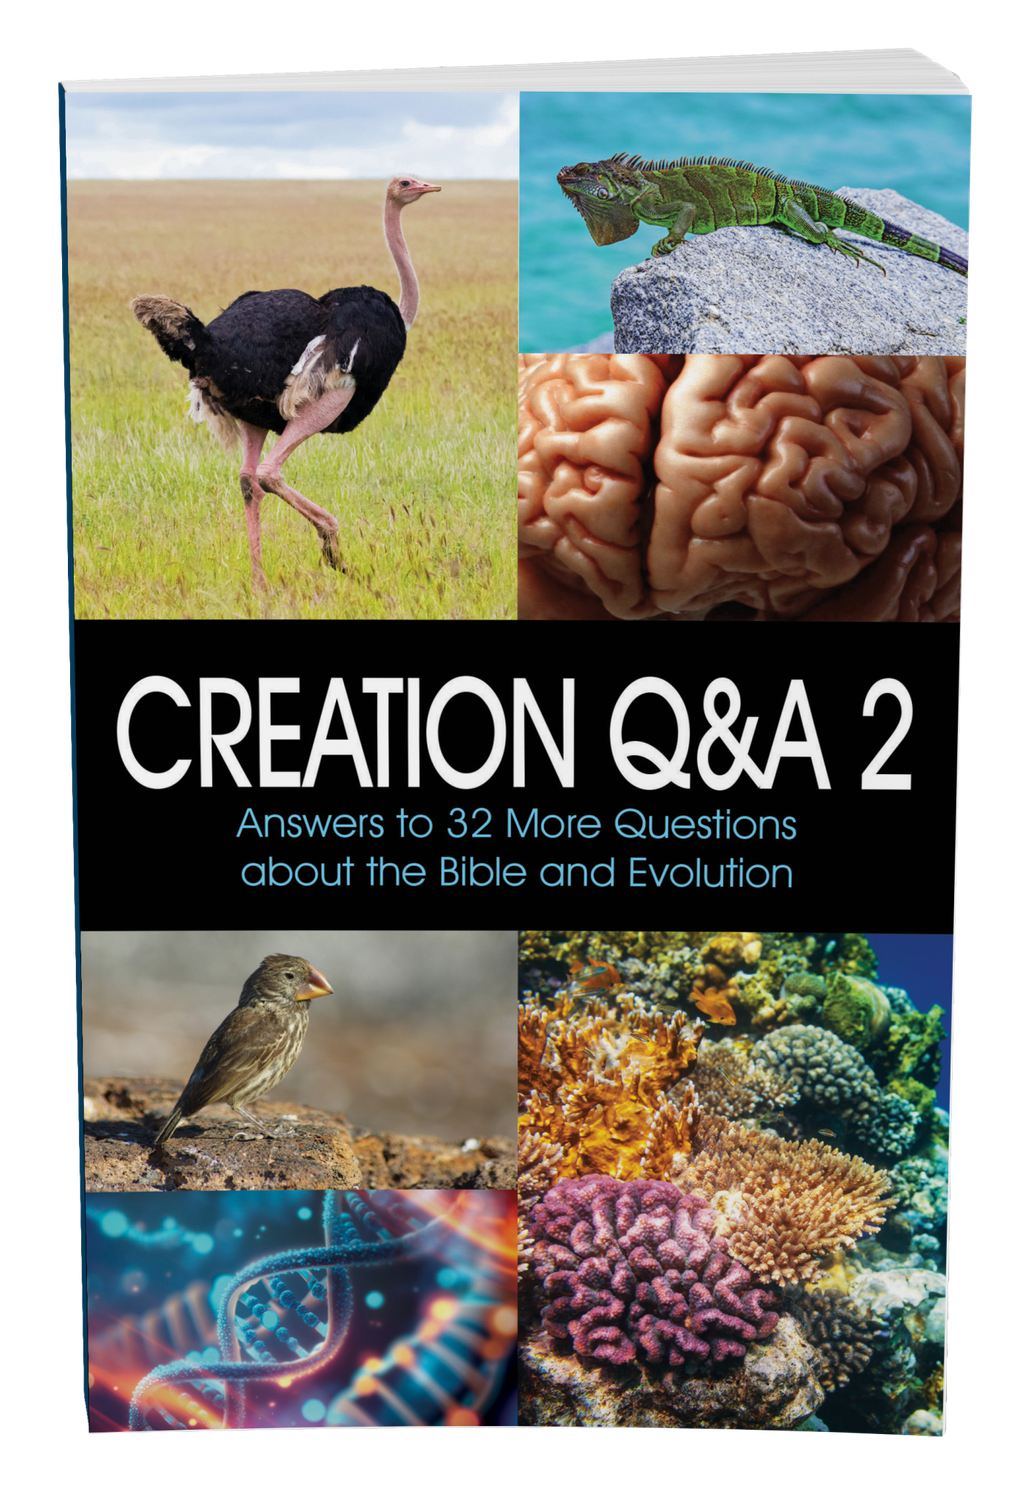 Creation Q&A 2